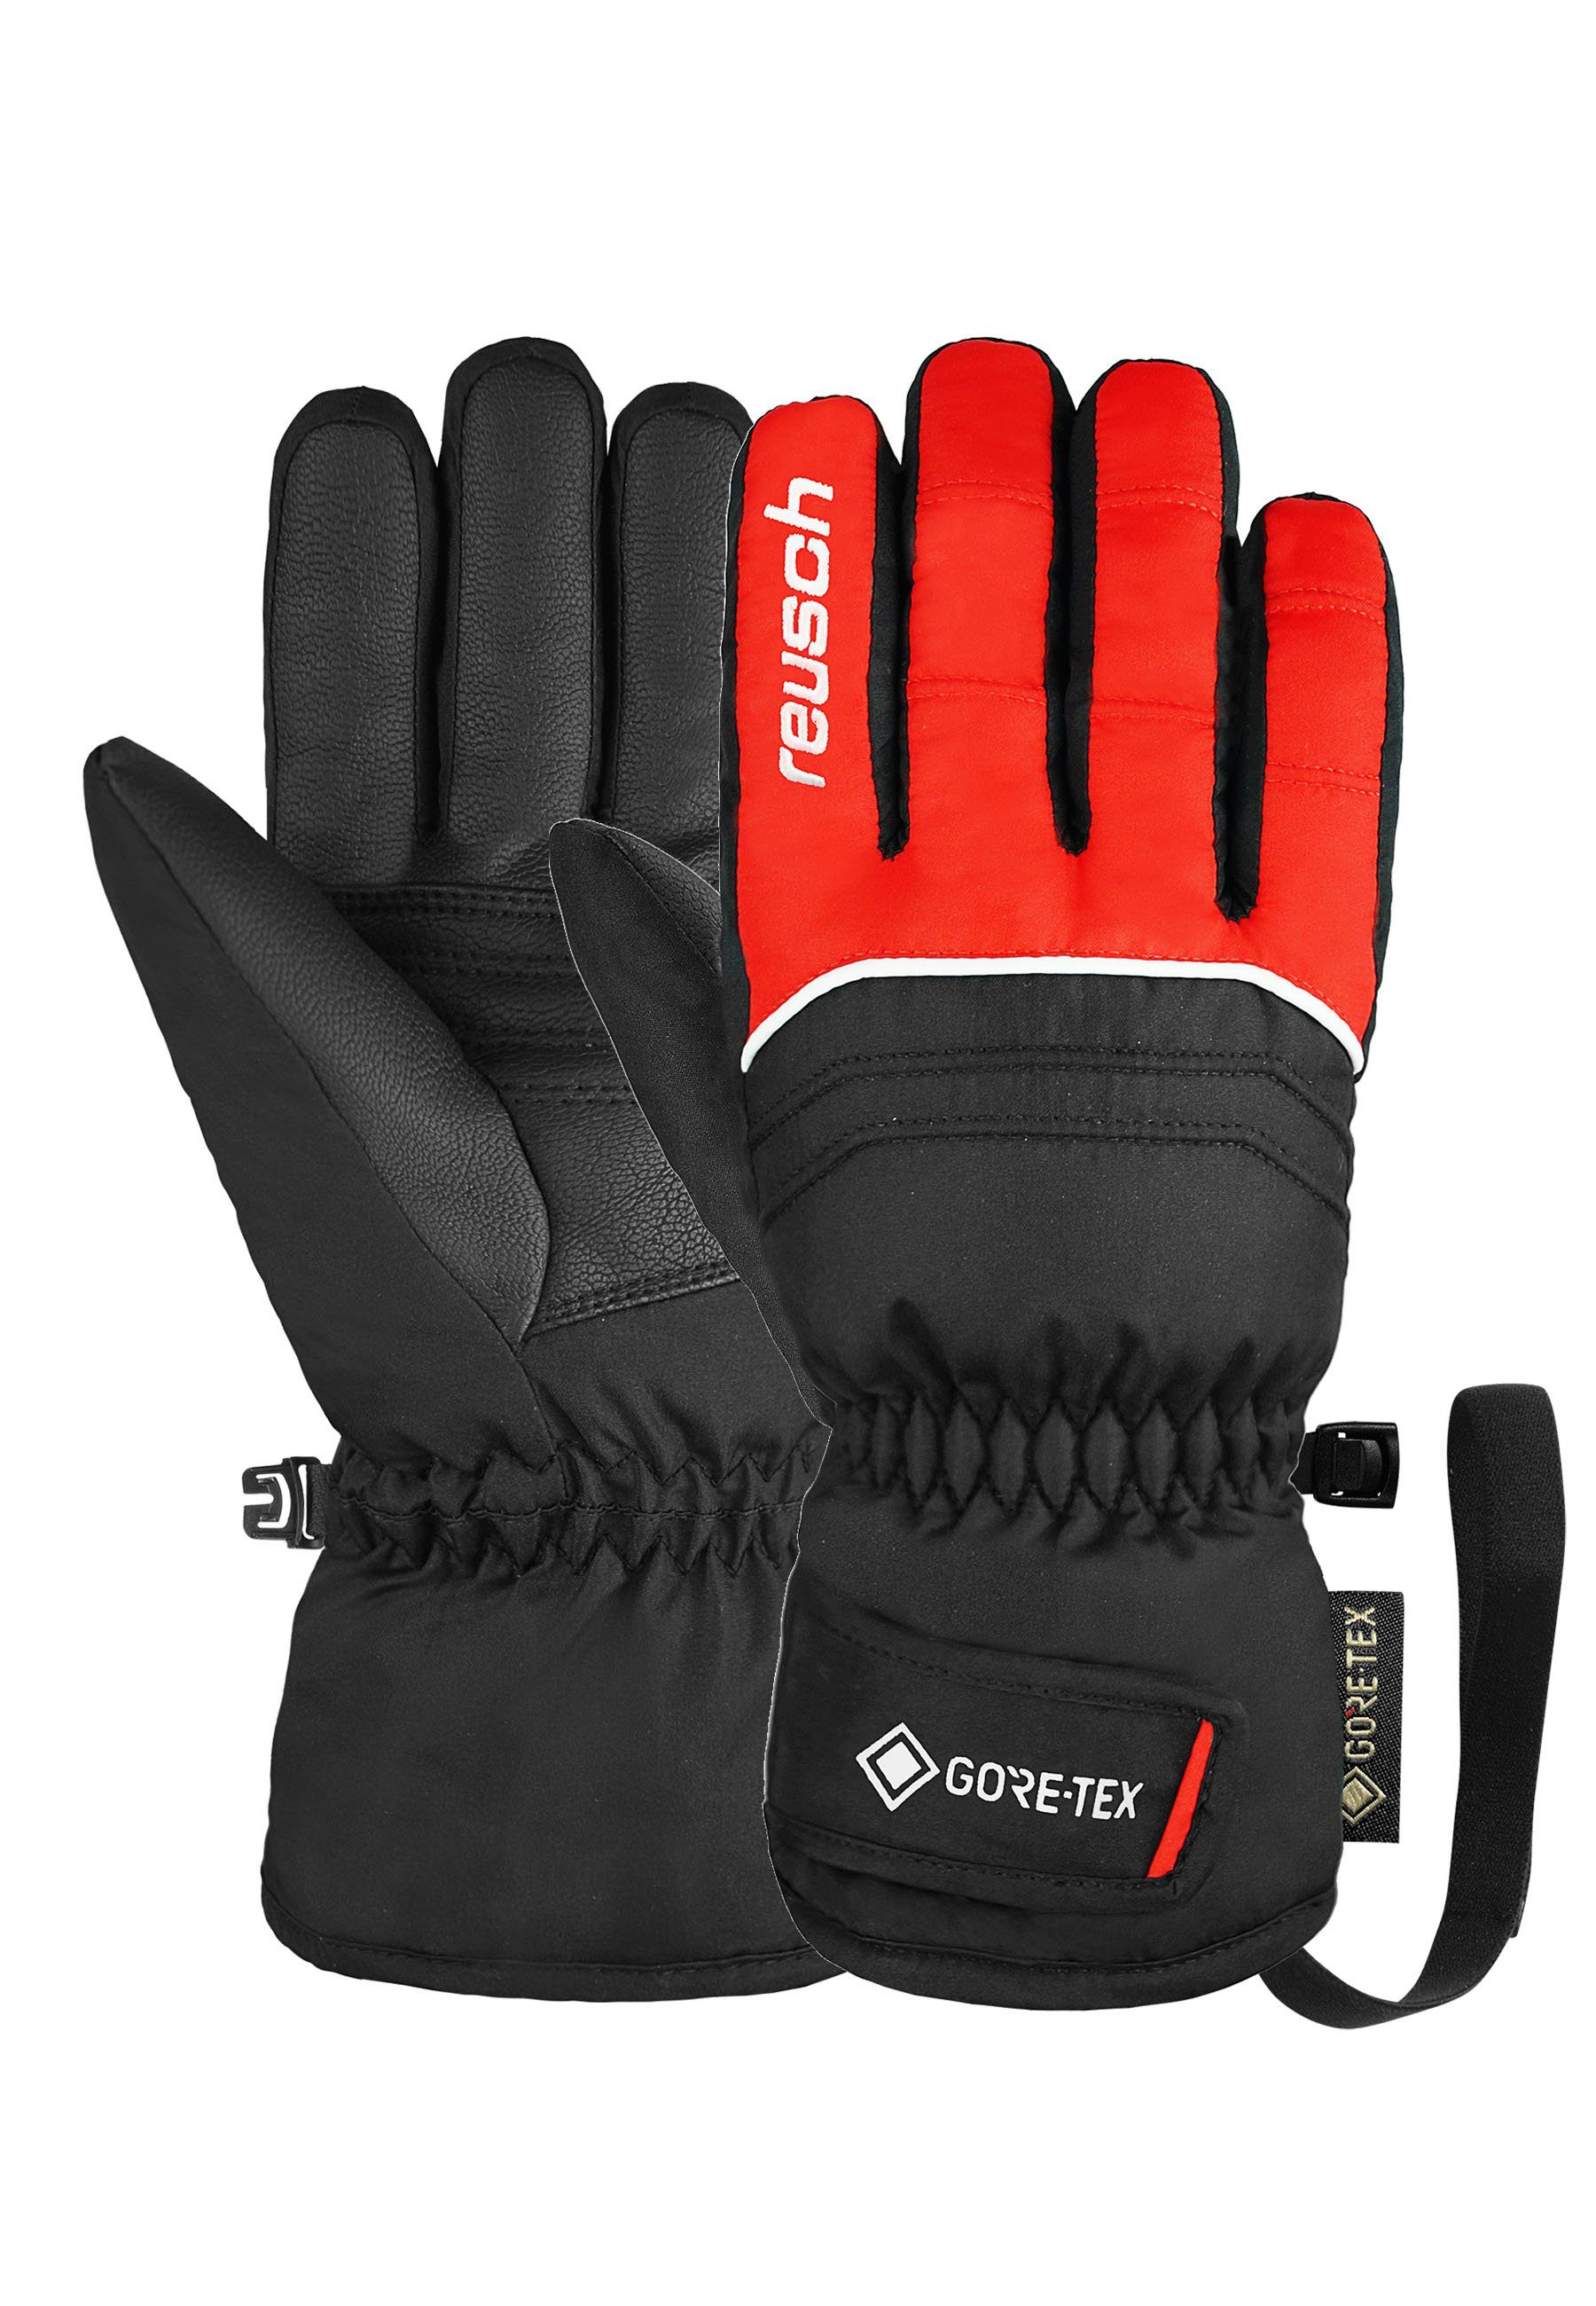 Reusch Skihandschuhe Teddy GORE-TEX mit wasserdichter Funktionsmembran rot-schwarz | Handschuhe